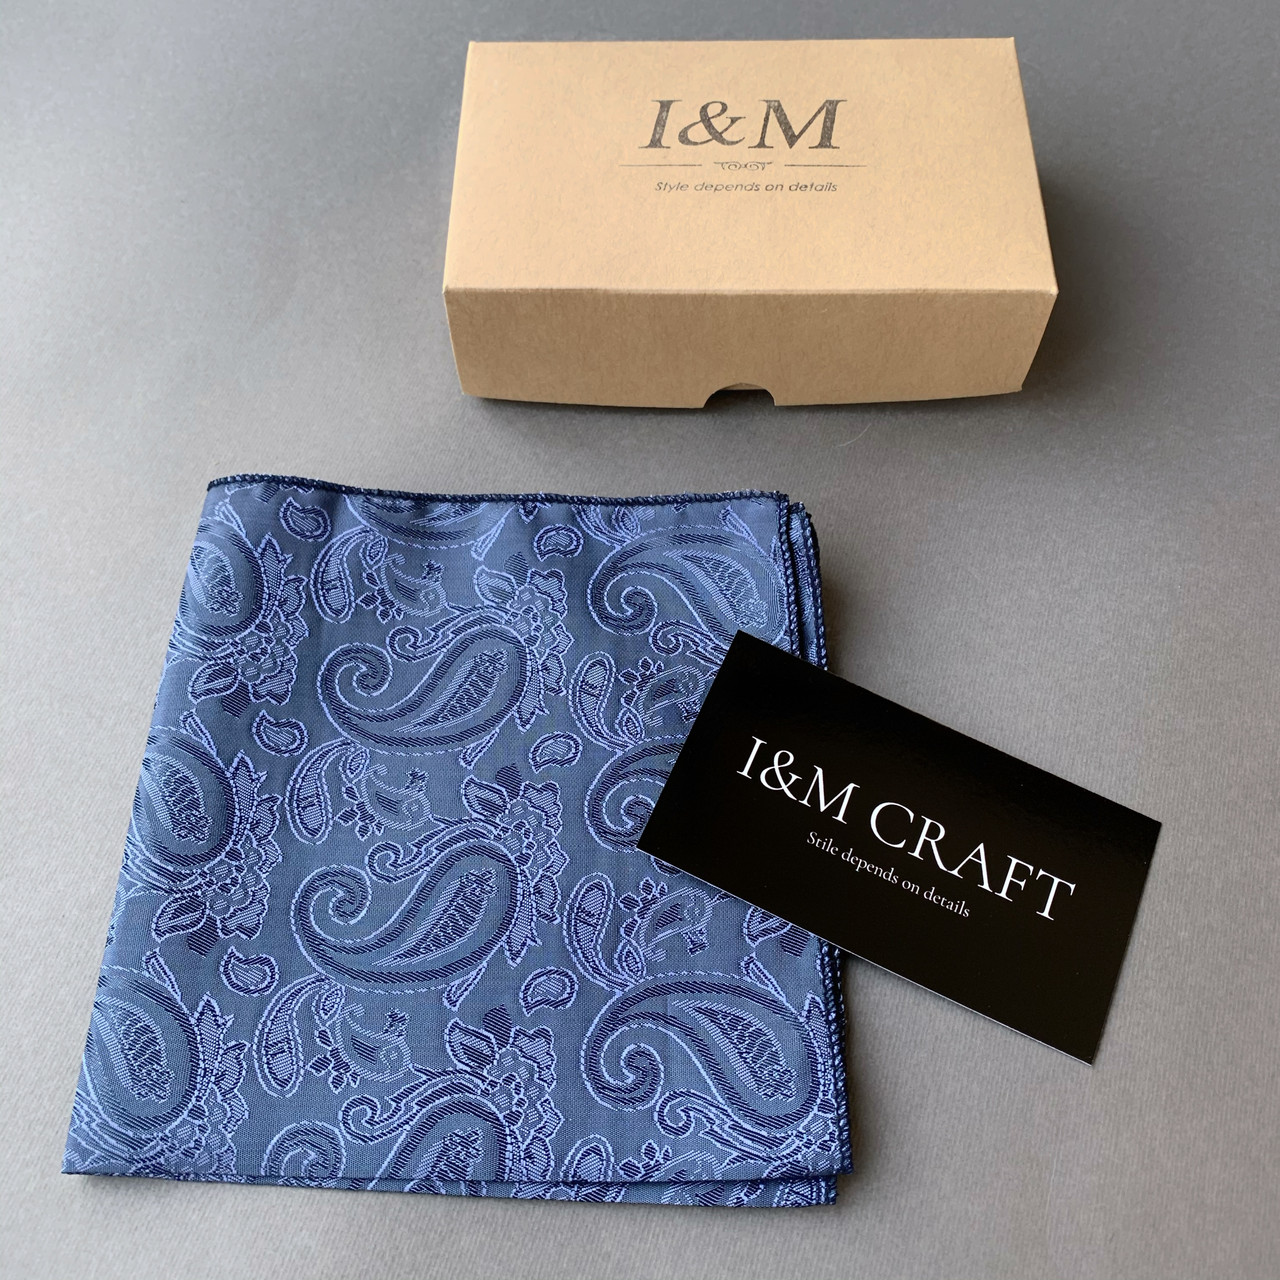 Нагрудный платок паше I&M Craft серо-синий с узорами (011166P)